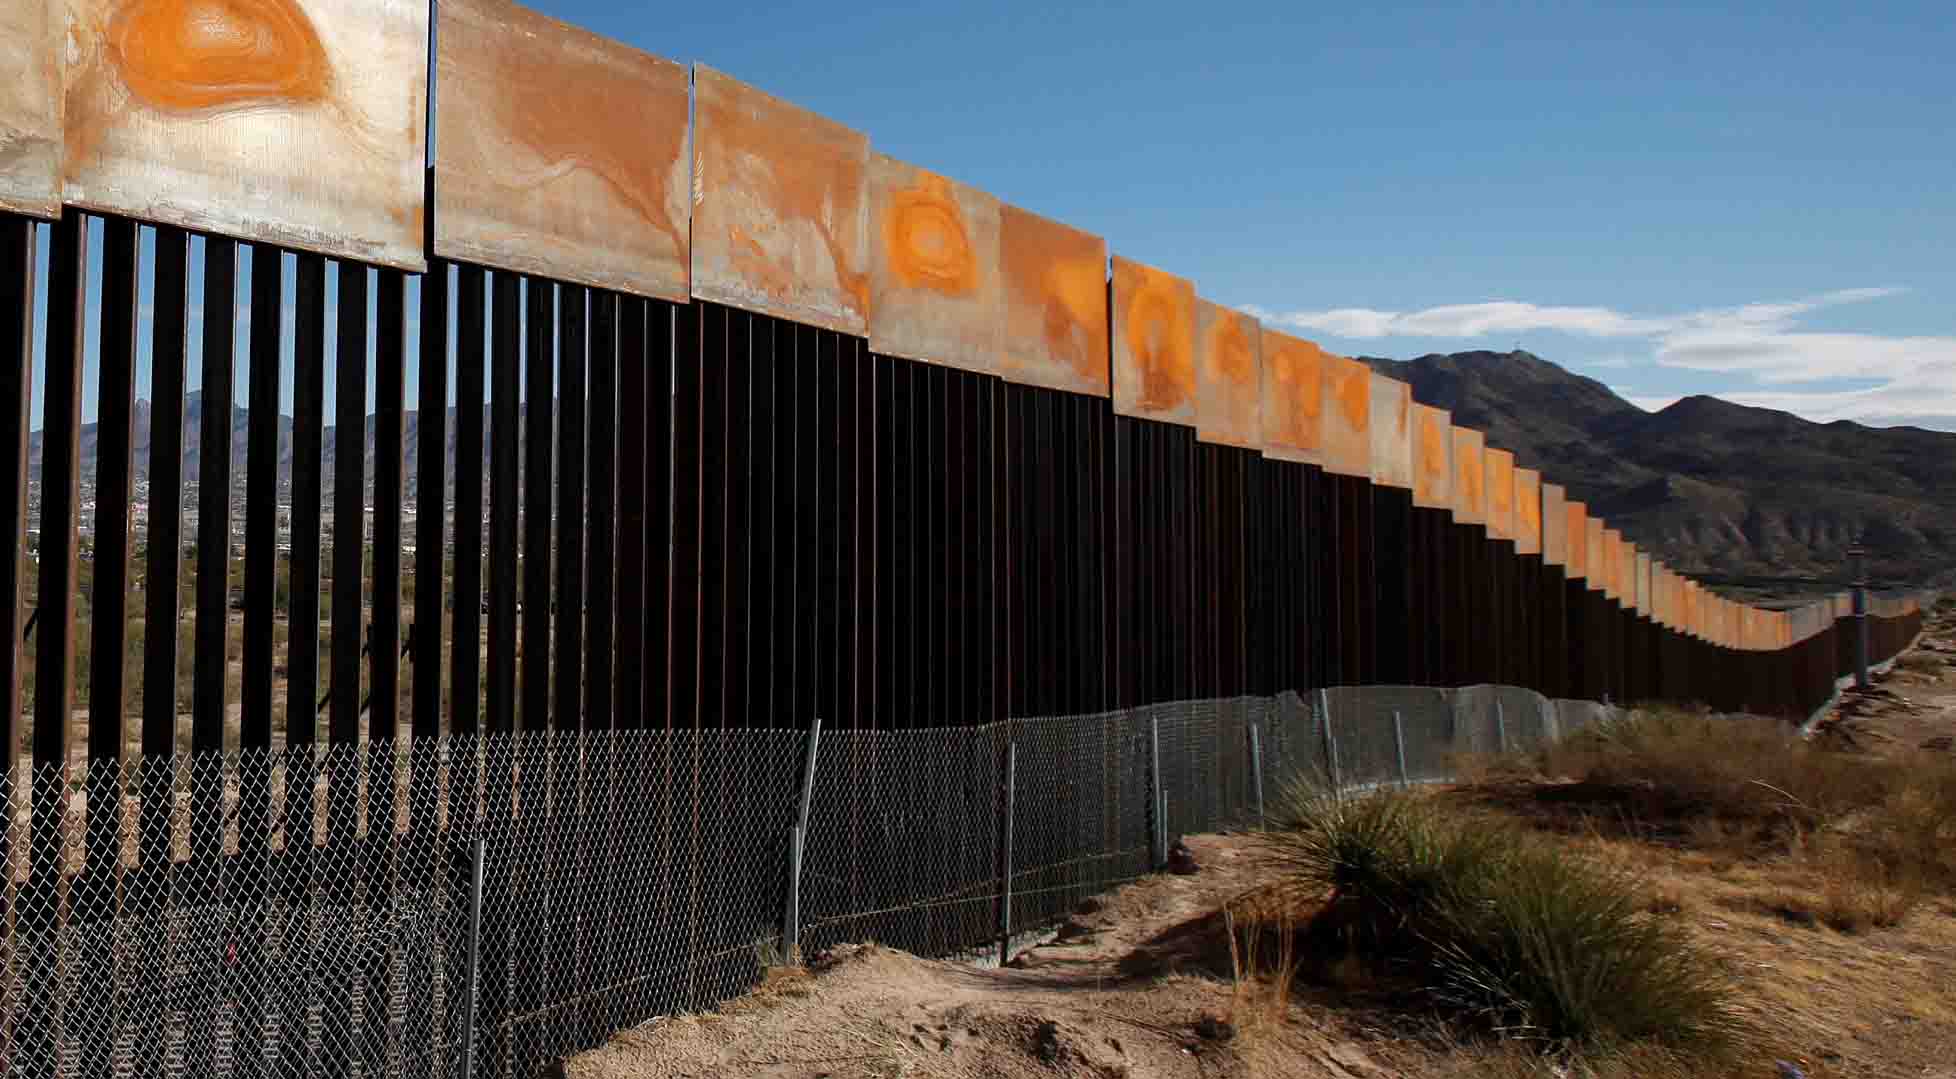 Los gobernadores mexicanos expresaron su rechazo a los planes migratorios de Trump tras considerar que generan un agravio a la humanidad